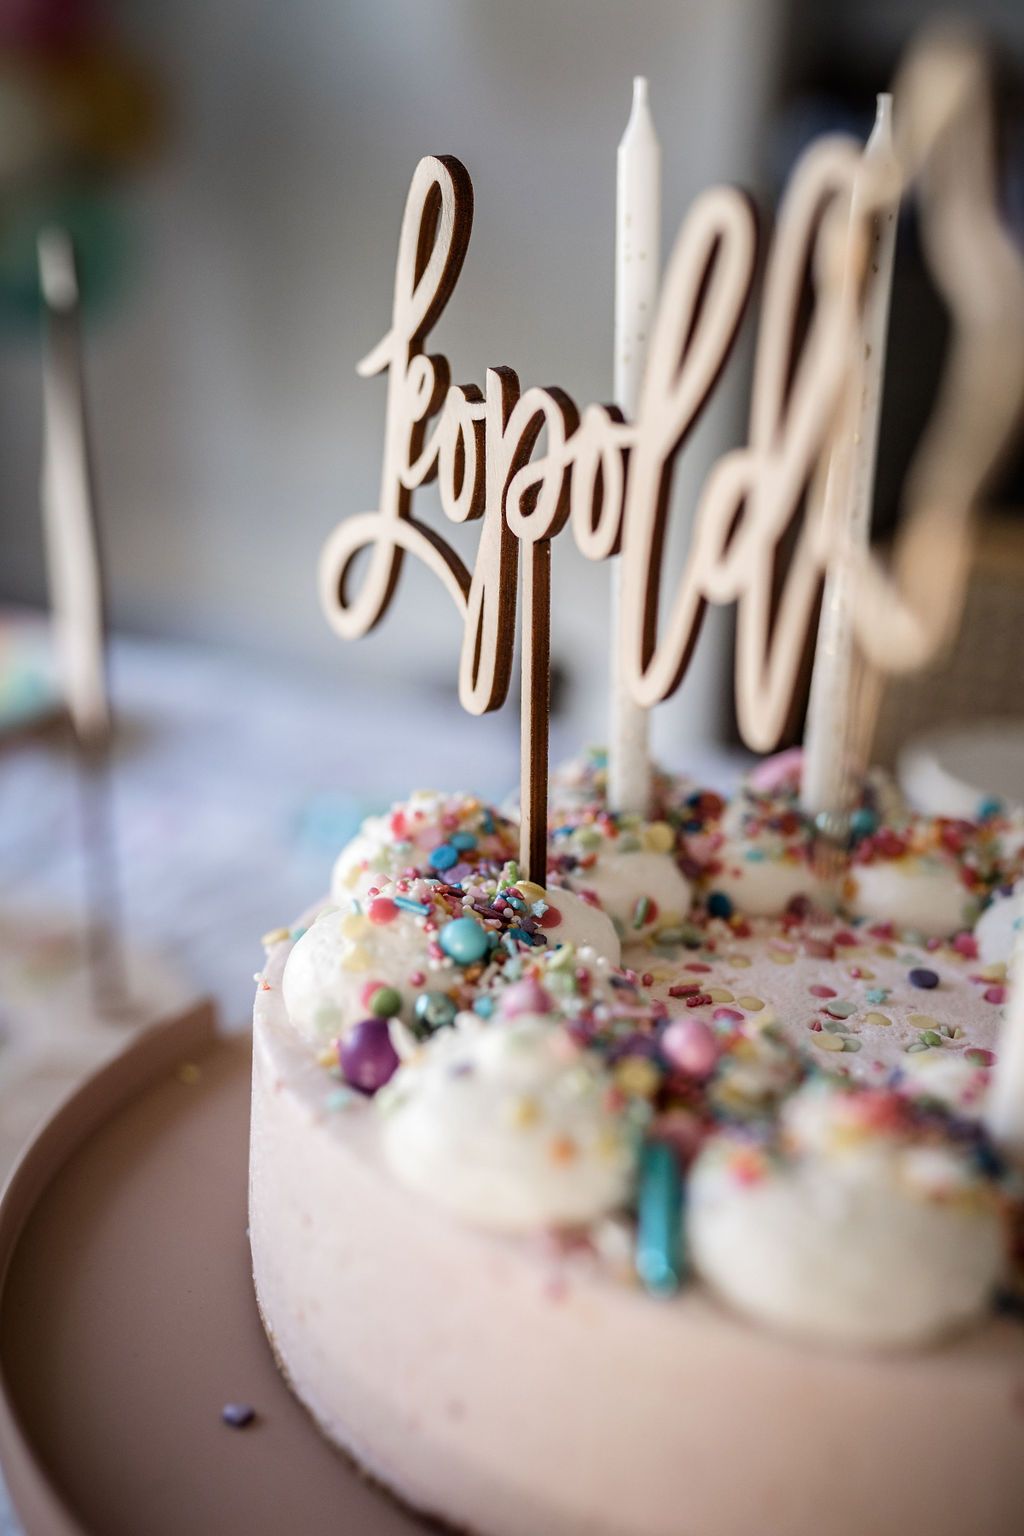 Auf diesem Bild sieht man einen Cake Topper aus Holz mit dem Namen Leopold in einem Geburtstagskuchen.